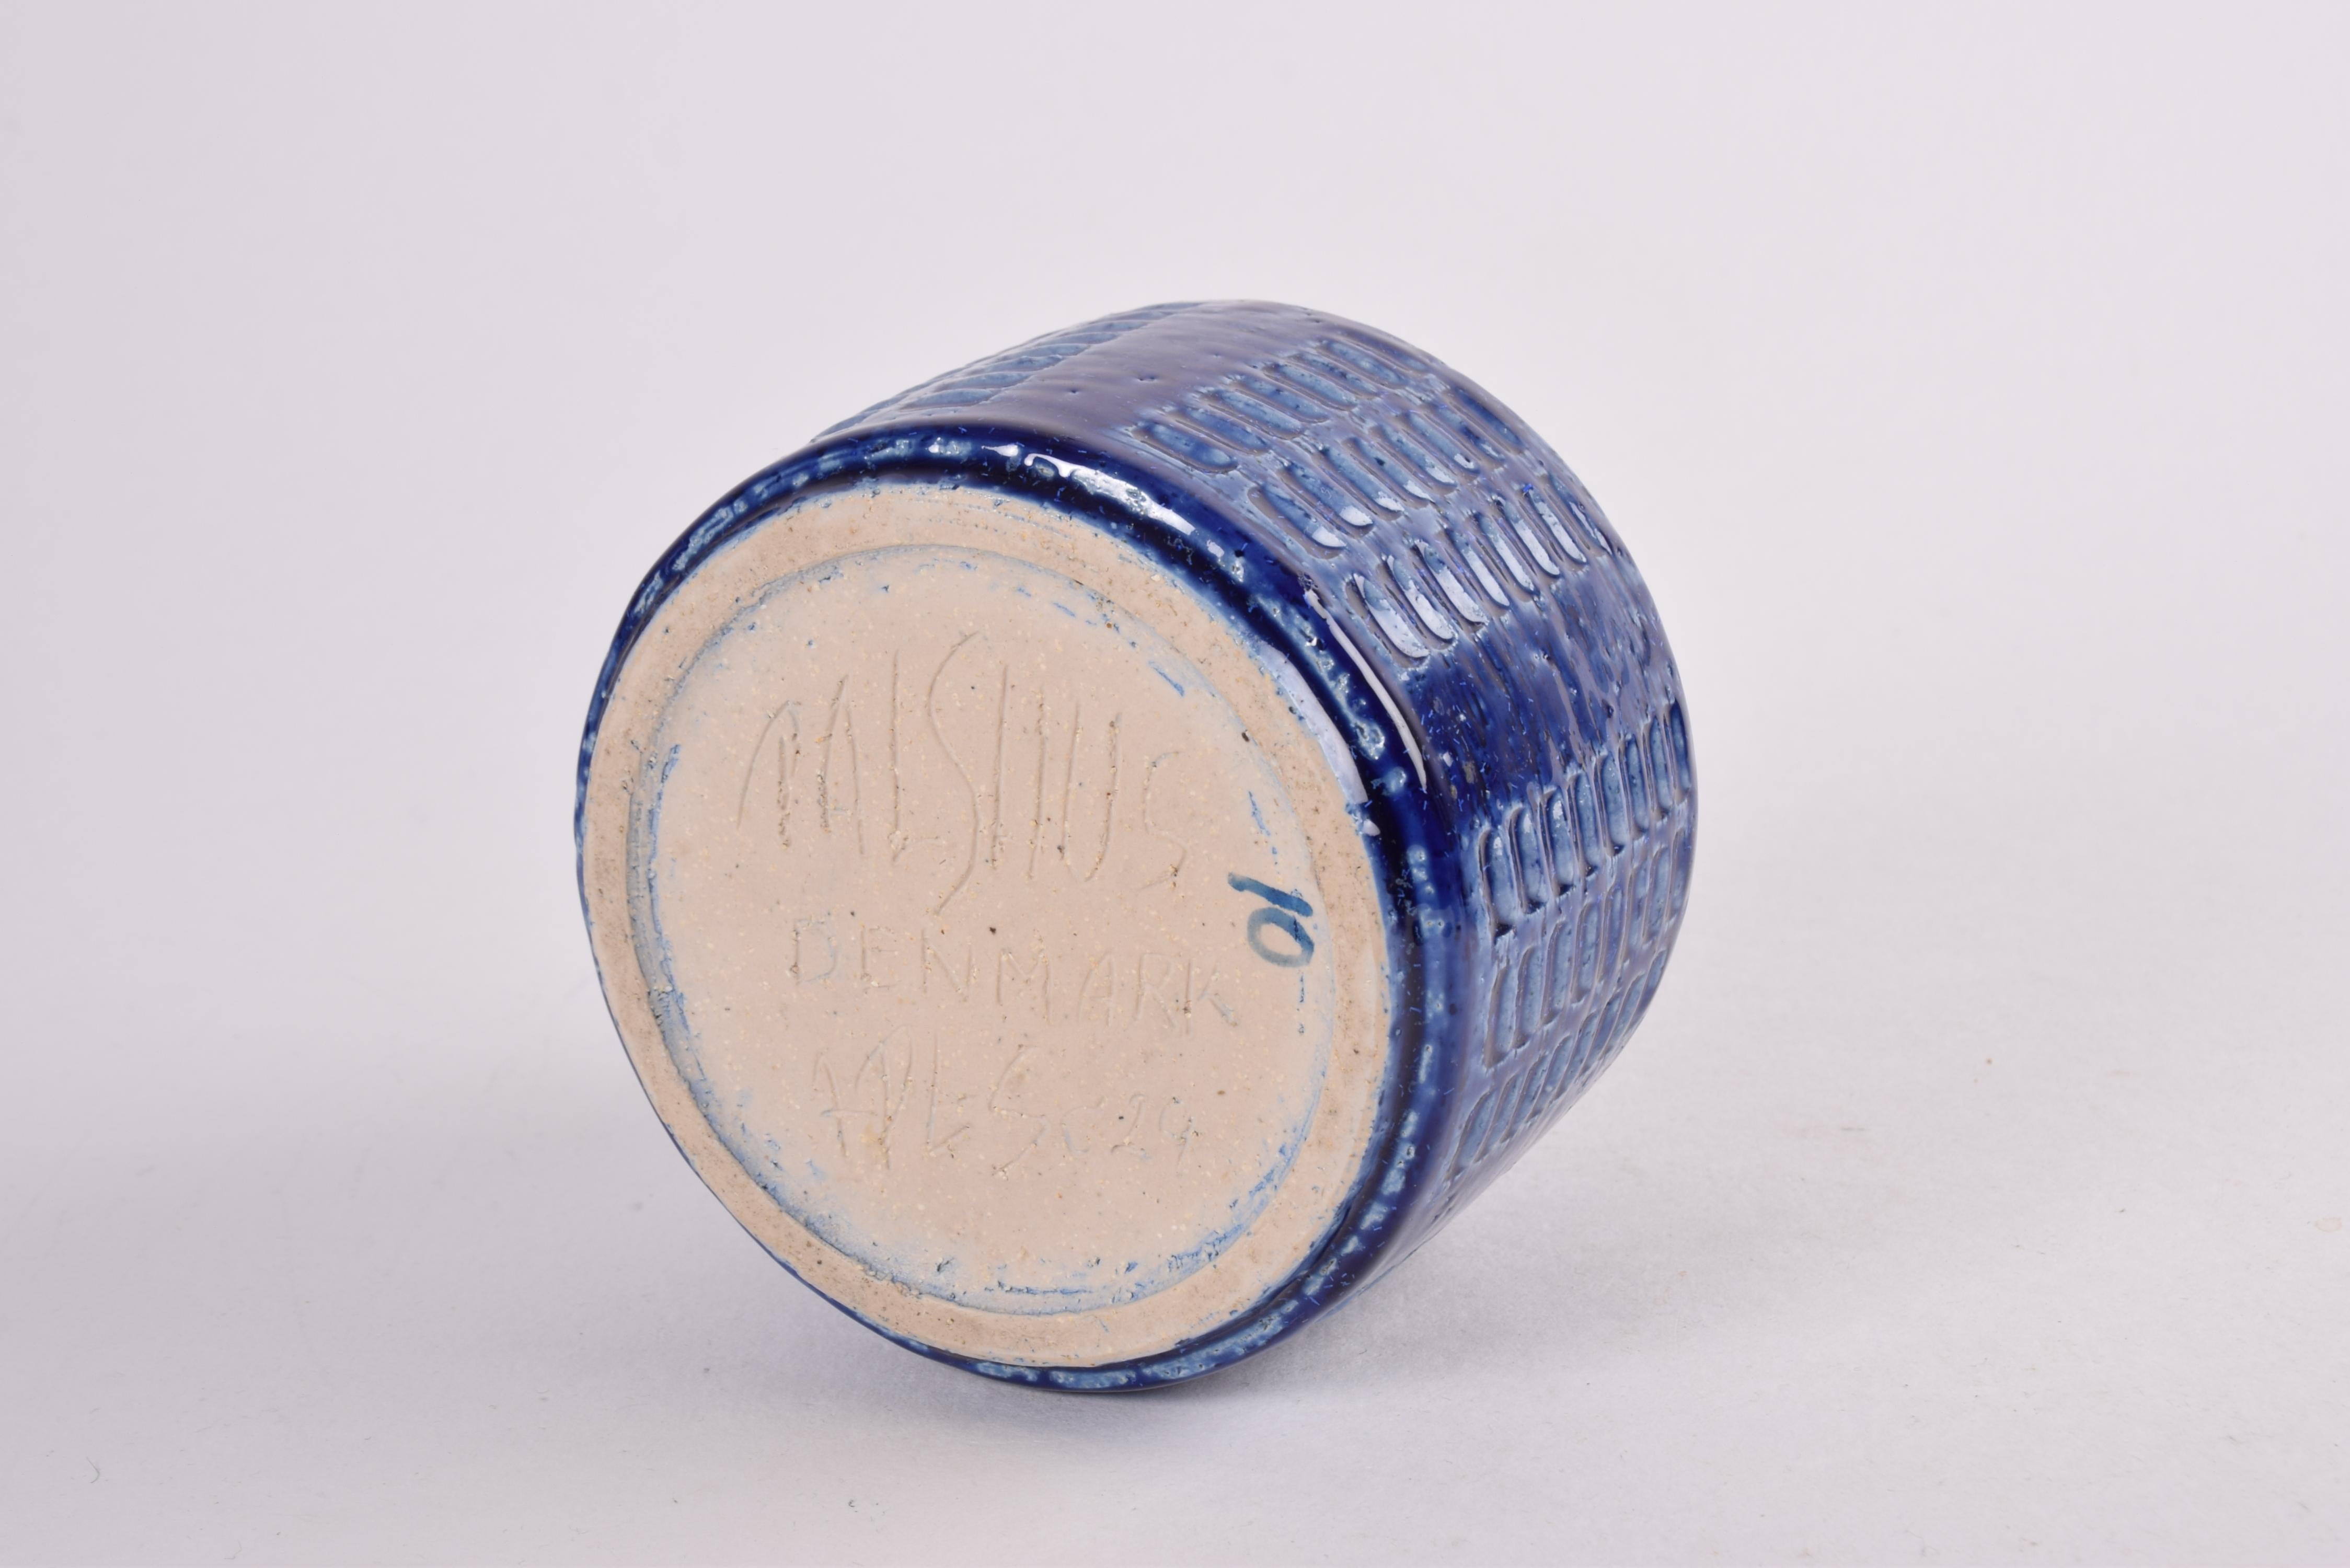 Mid-20th Century Palshus Ceramic Vase Cobalt Blue by Per Linnemann-Schmidt, Danish 1960s For Sale